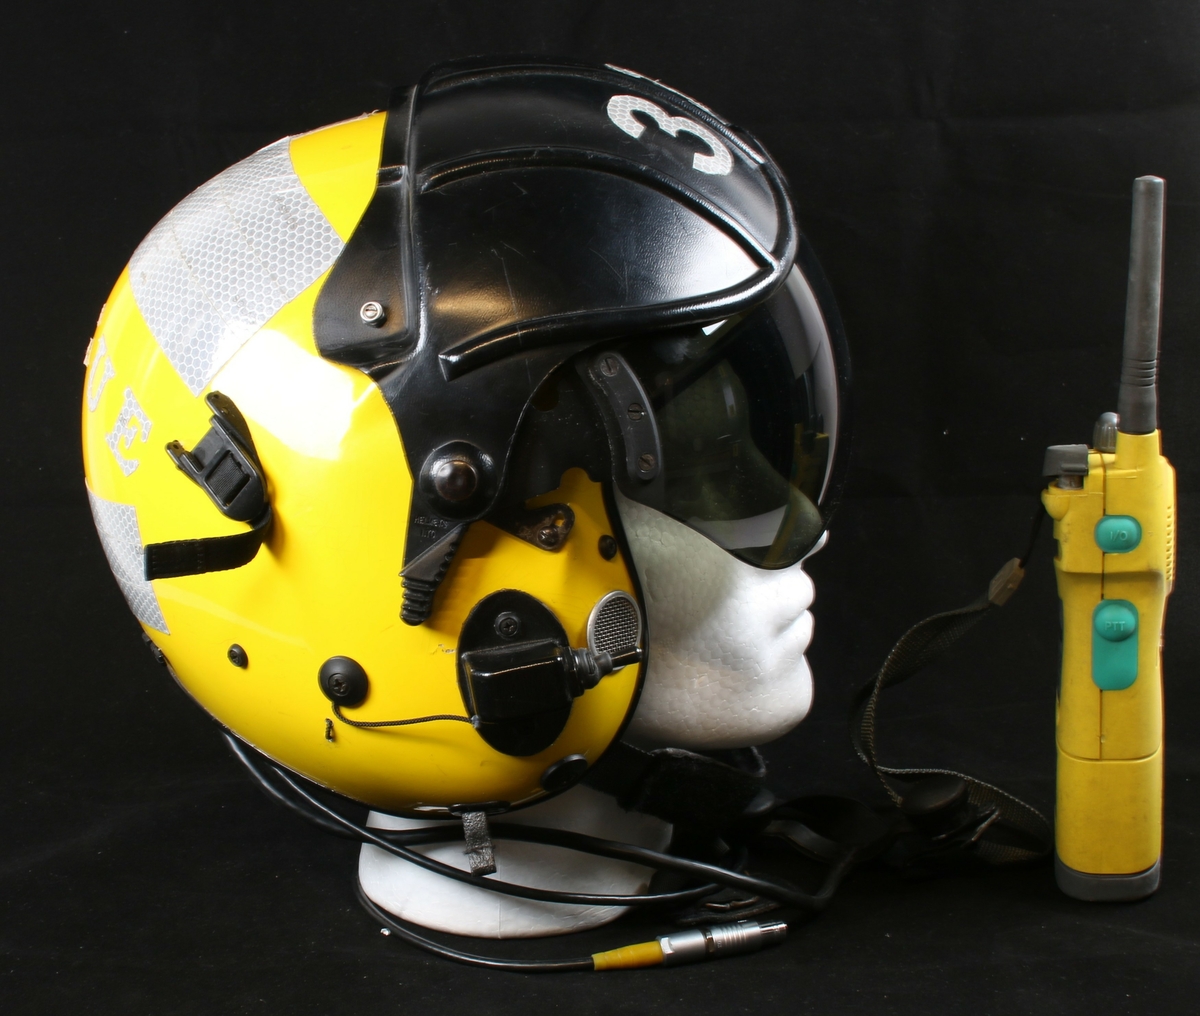 Påført refleks tape og gul maling for synlighet i vann om natten 
Hjelmen kommer med kommunikasjonssystem - NAVICO. AXIS 150 GMDSS